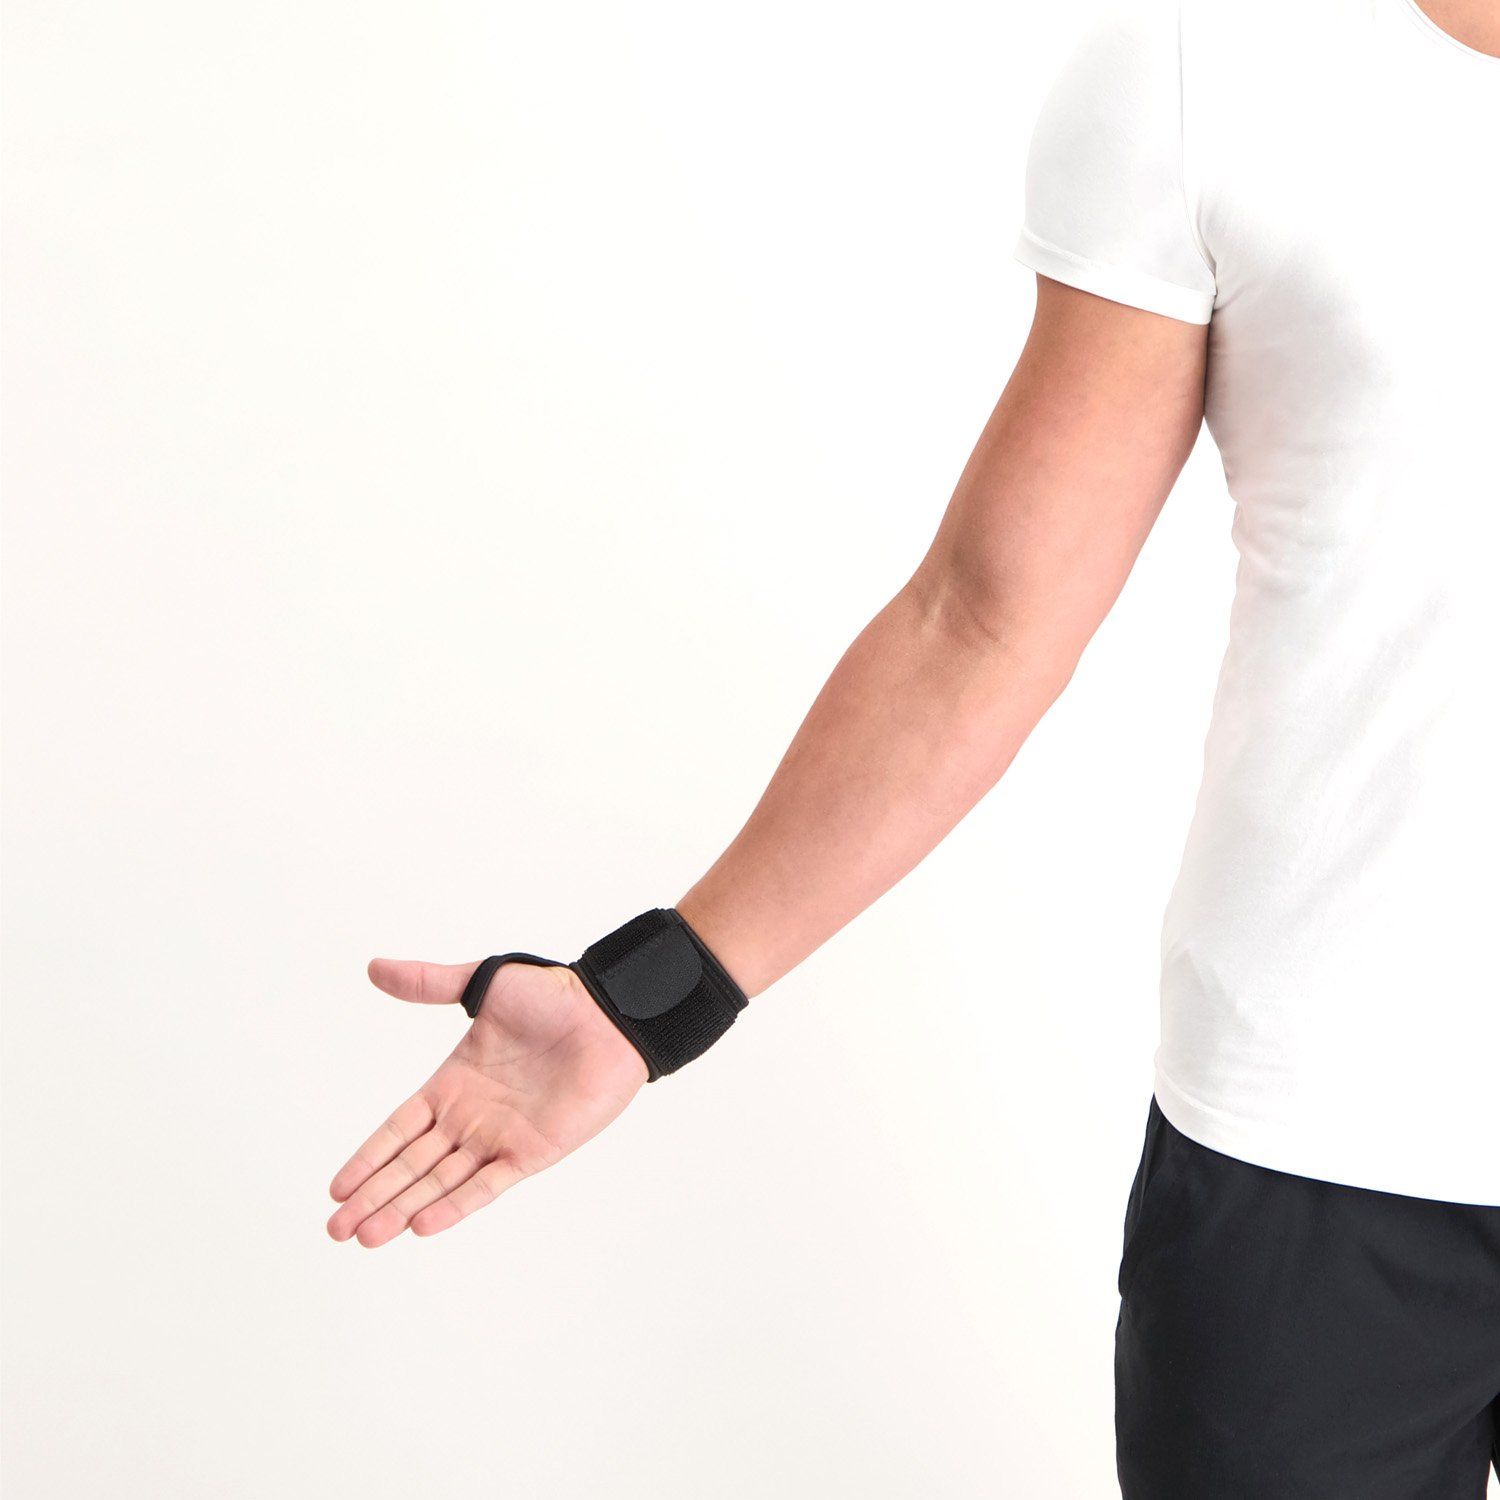 Medidu Wrist Support worn